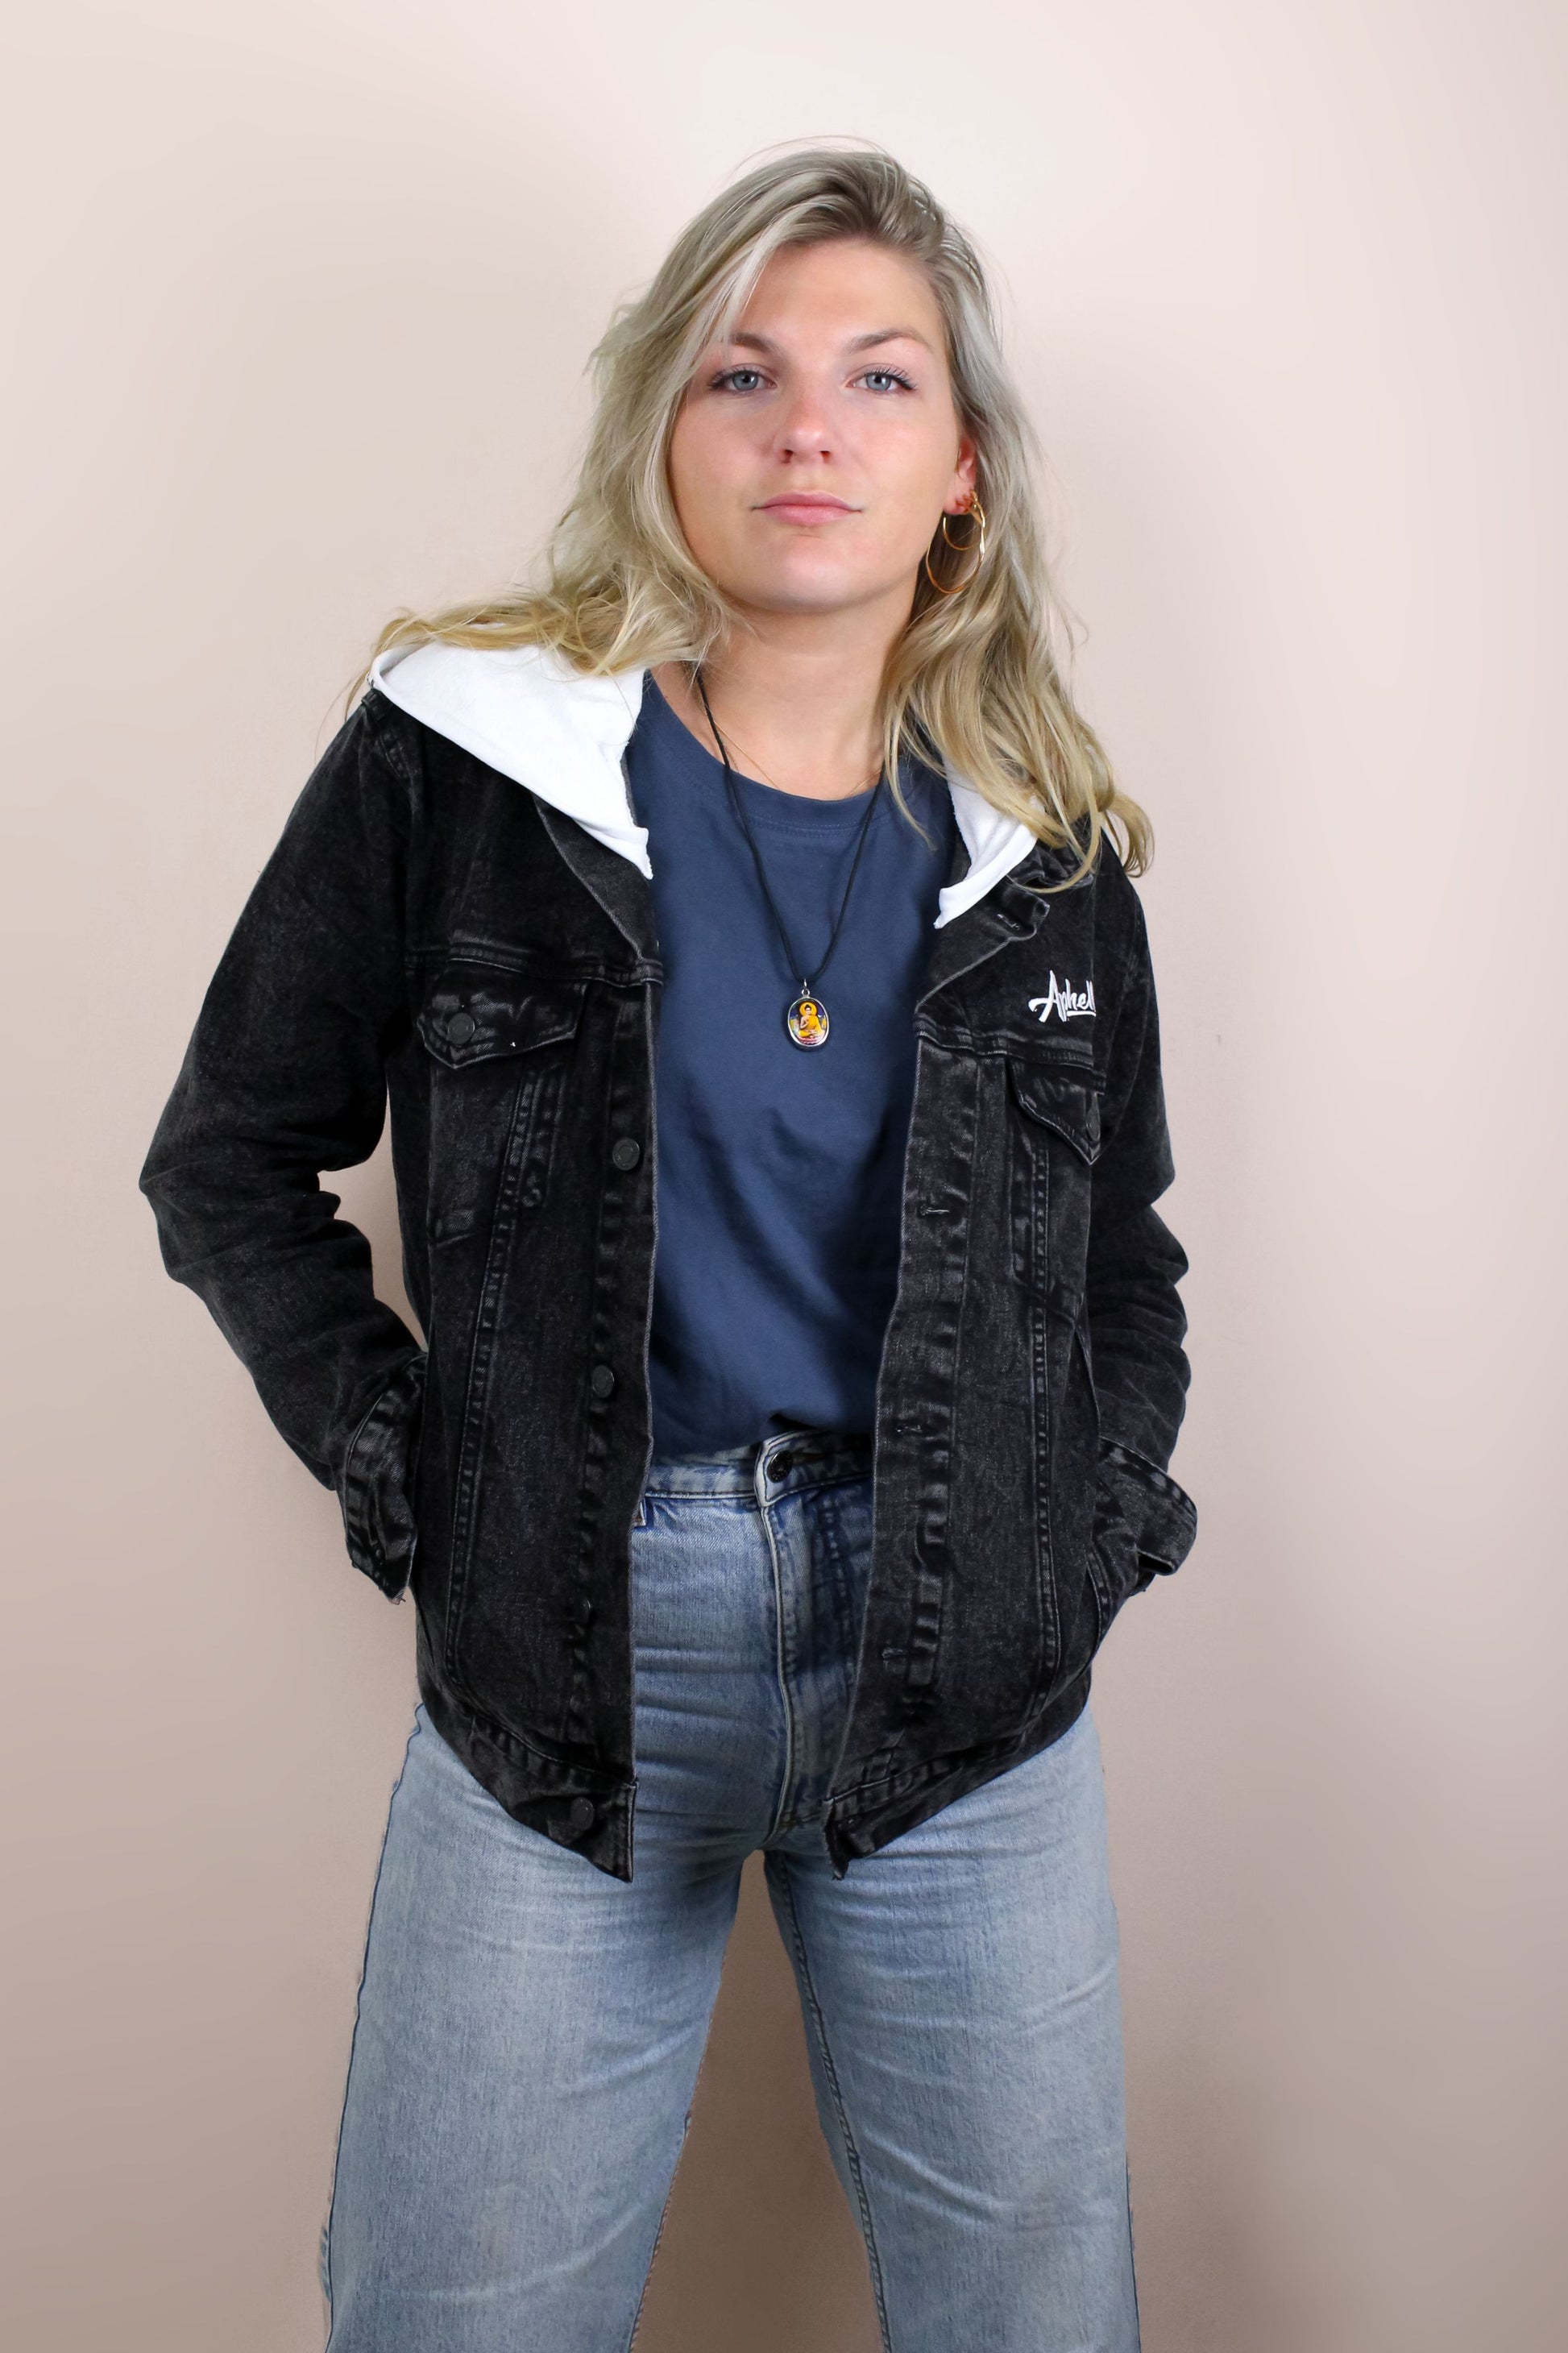 art inspired black jean jacket for men and women